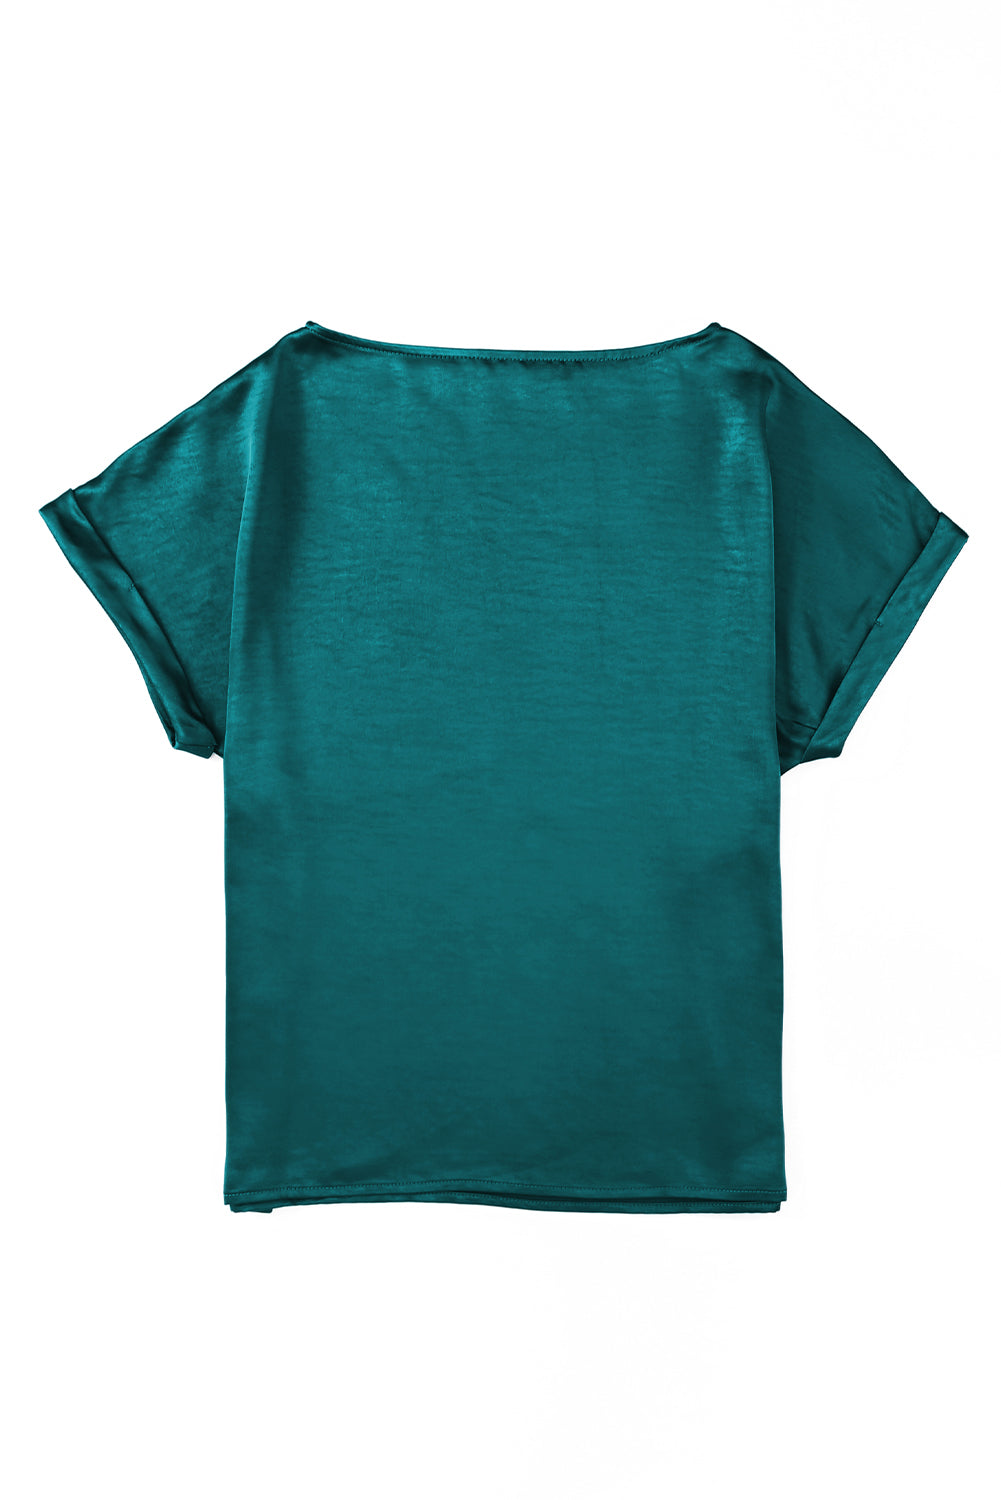 T-shirt a maniche corte tinta unita color albicocca